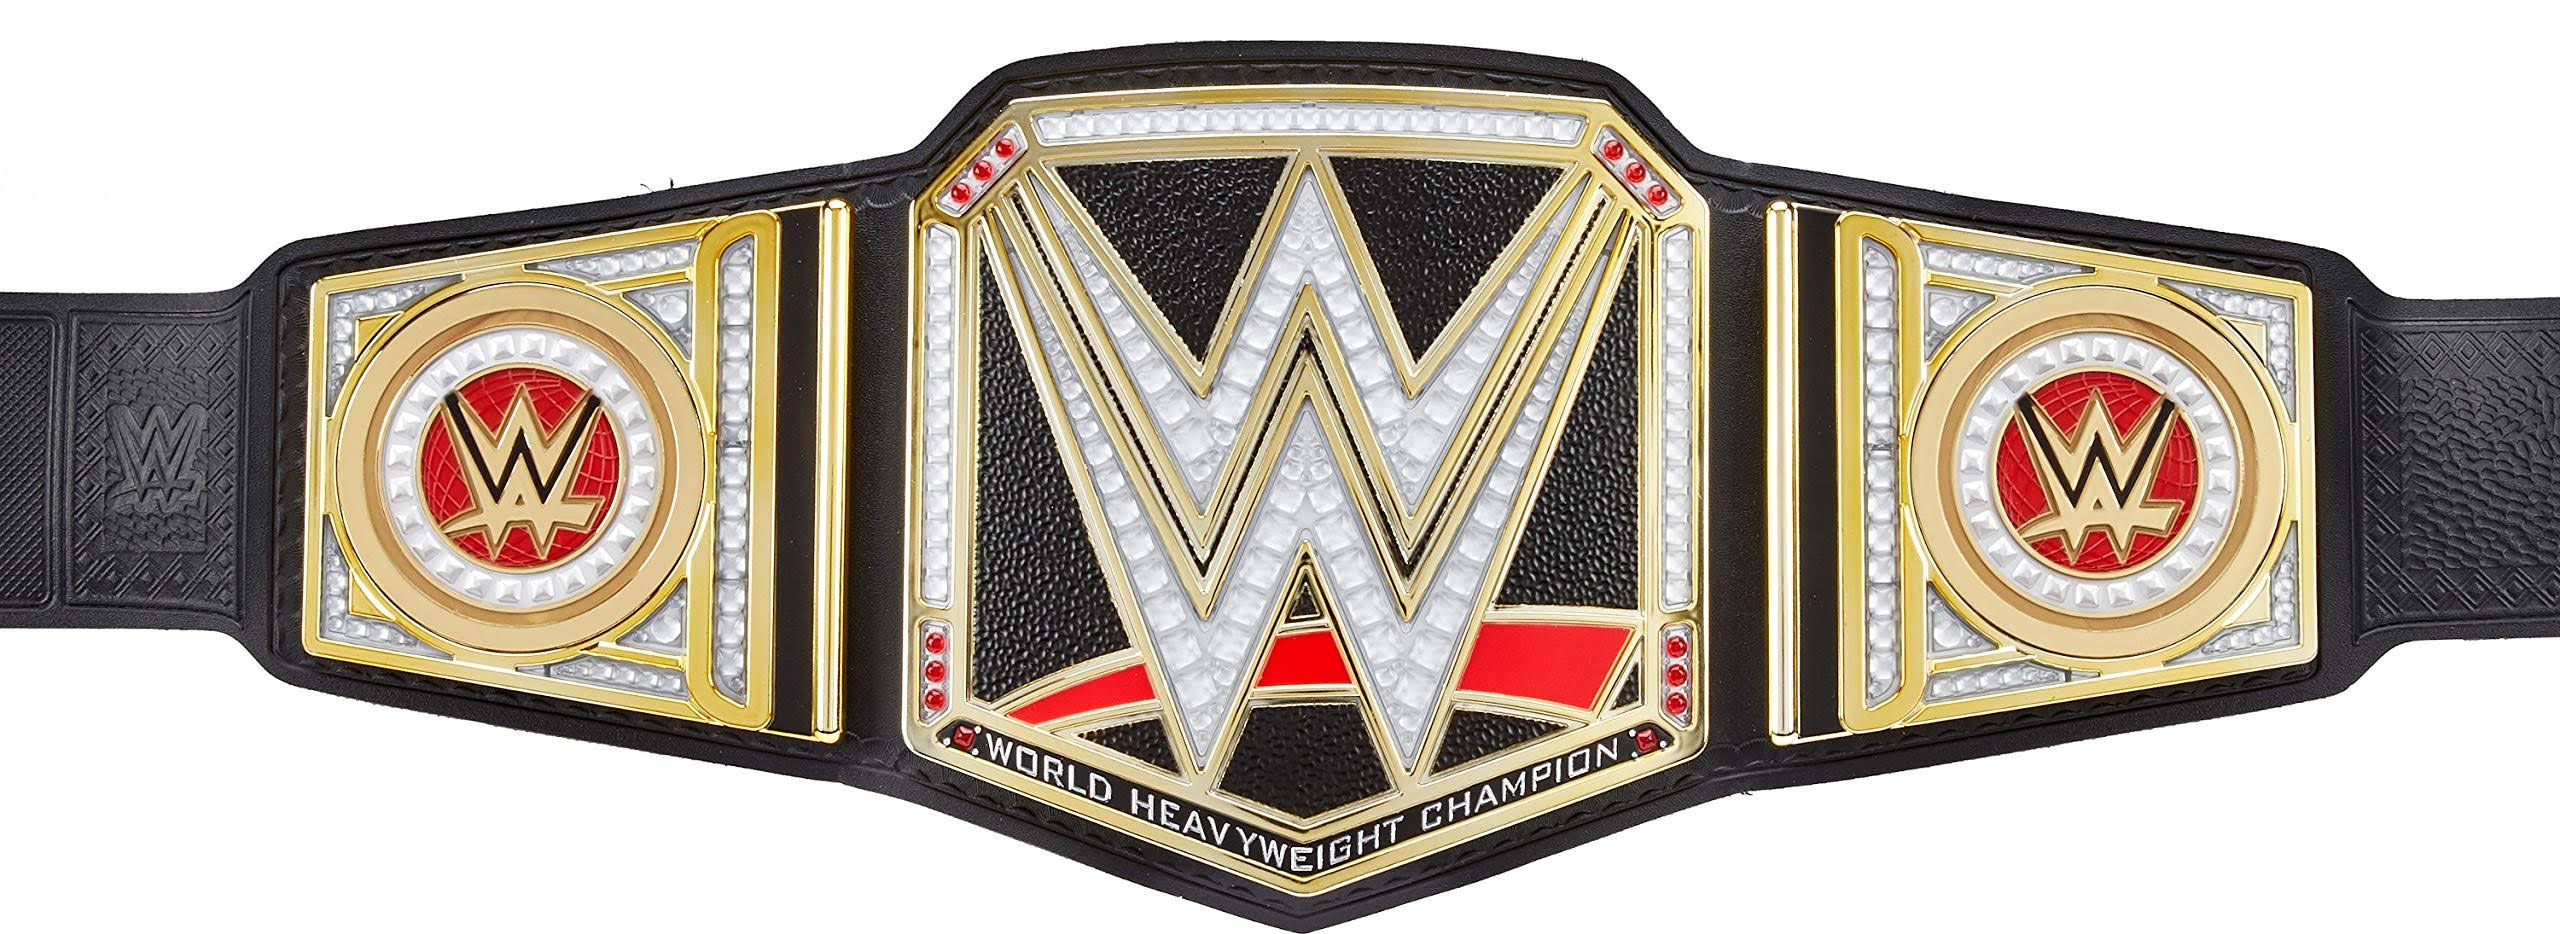 WWE - Championship Showdown Deluxe Role Play Title Belt Set - WWWW